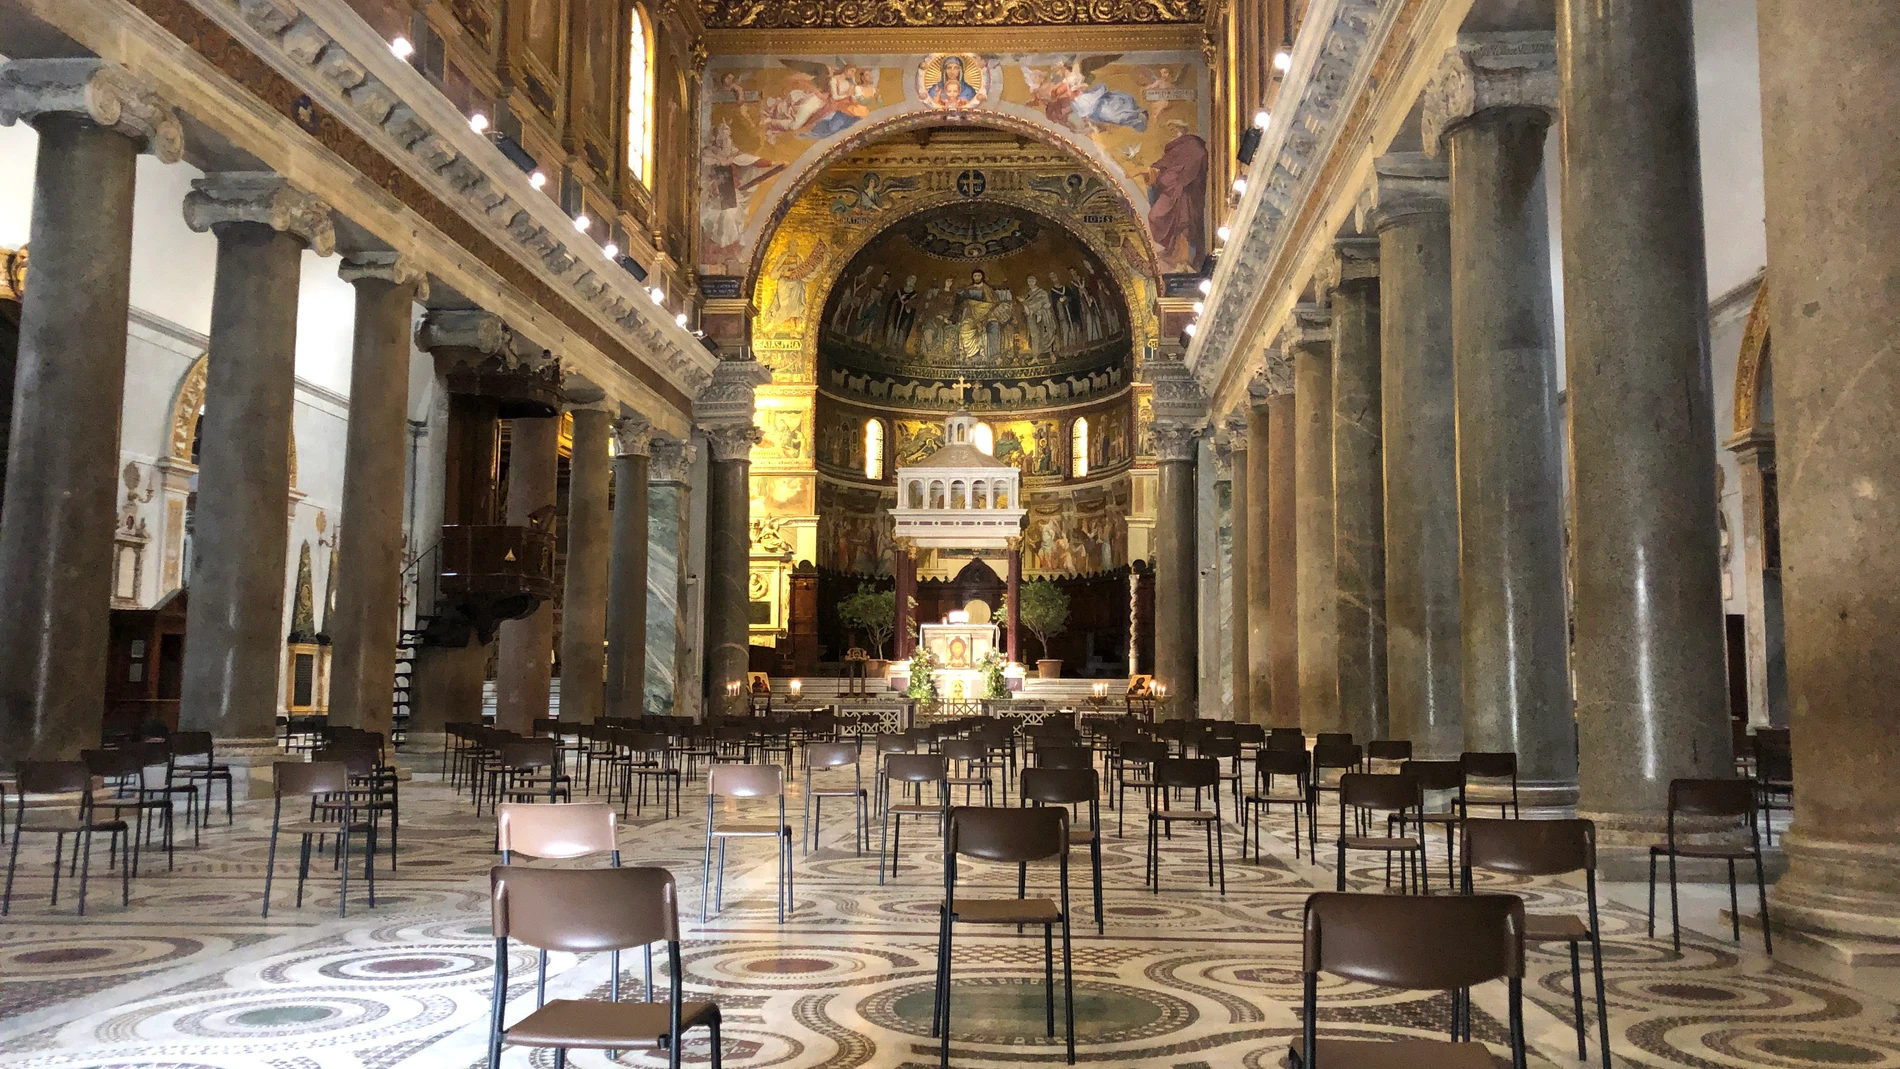 La nueva manera de sentarse en misa post Covid 19. Basílica de Santa María in Trastevere. Roma